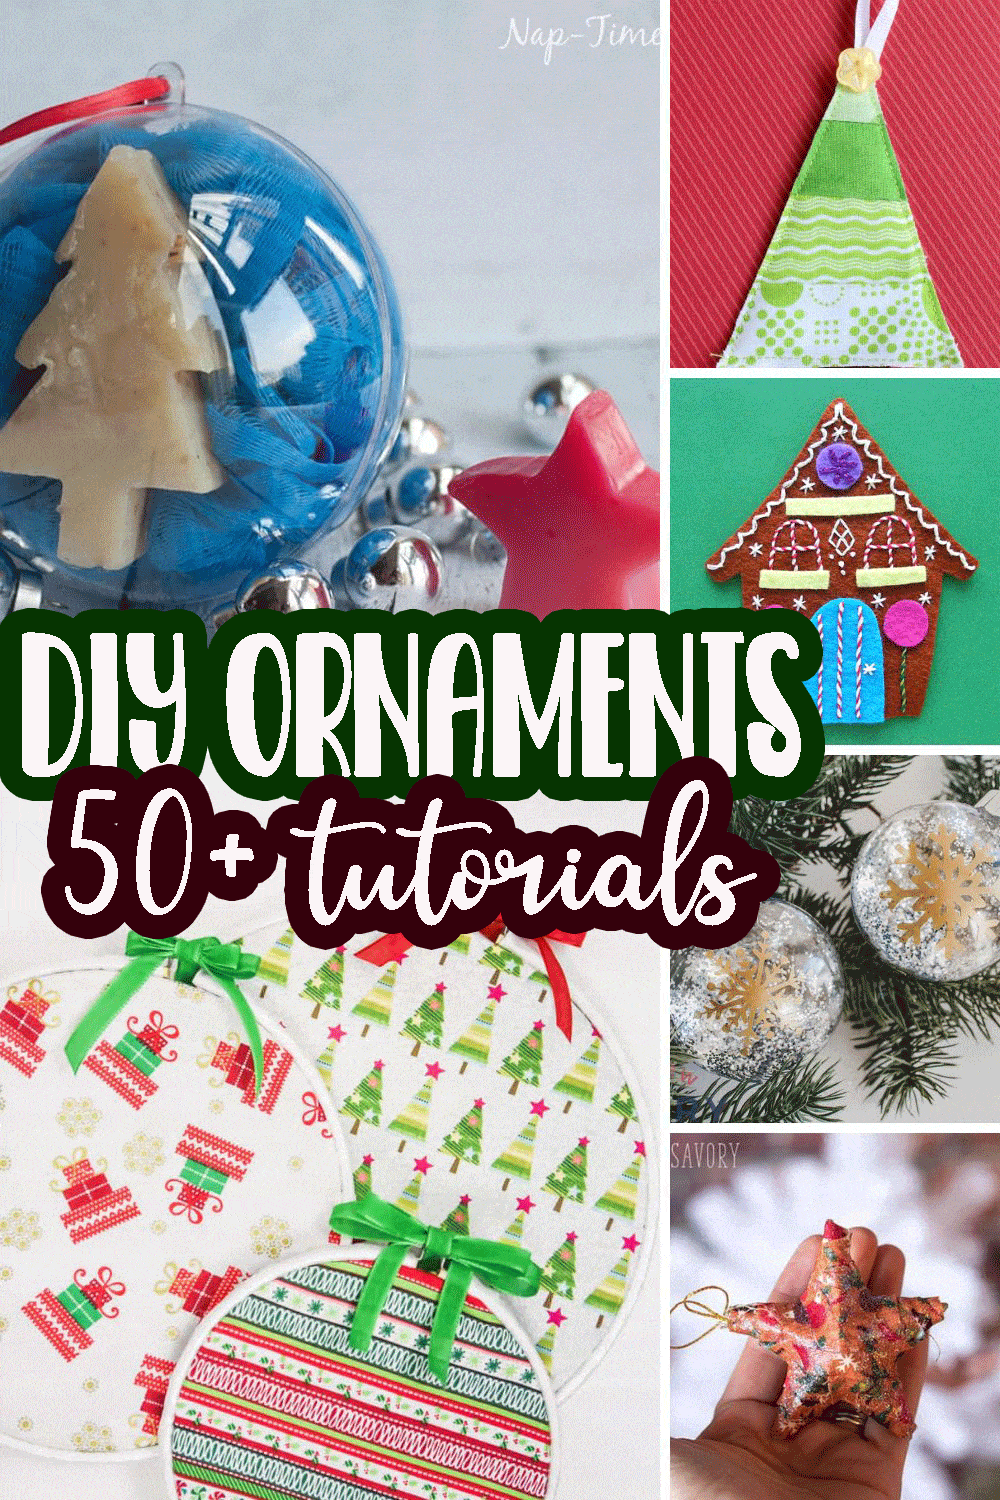 DIY ornament tutorials